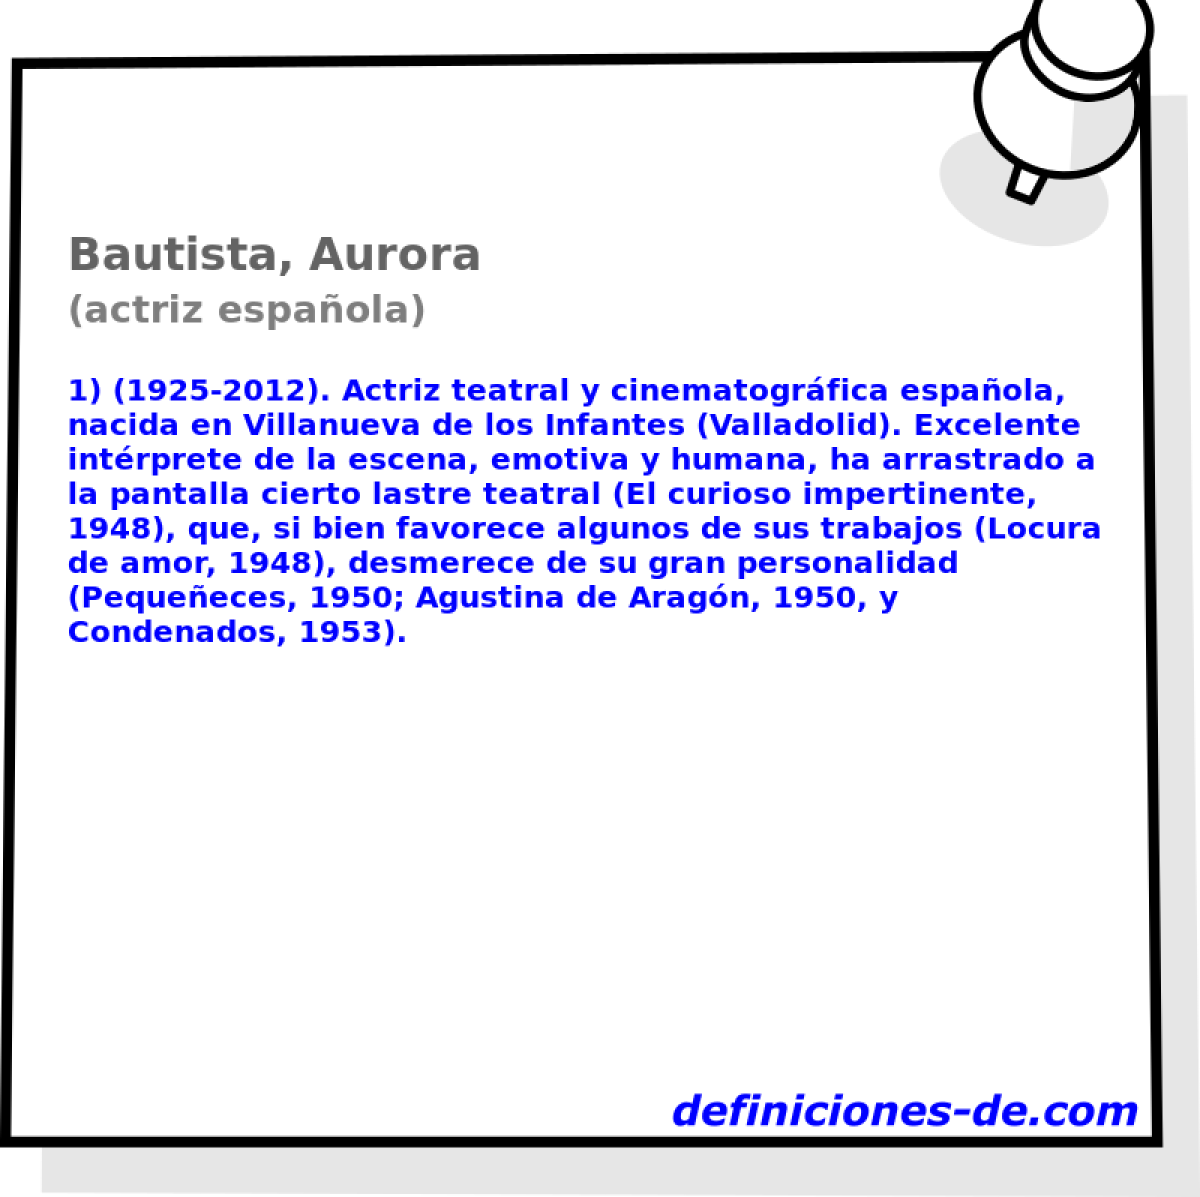 Bautista, Aurora (actriz espaola)